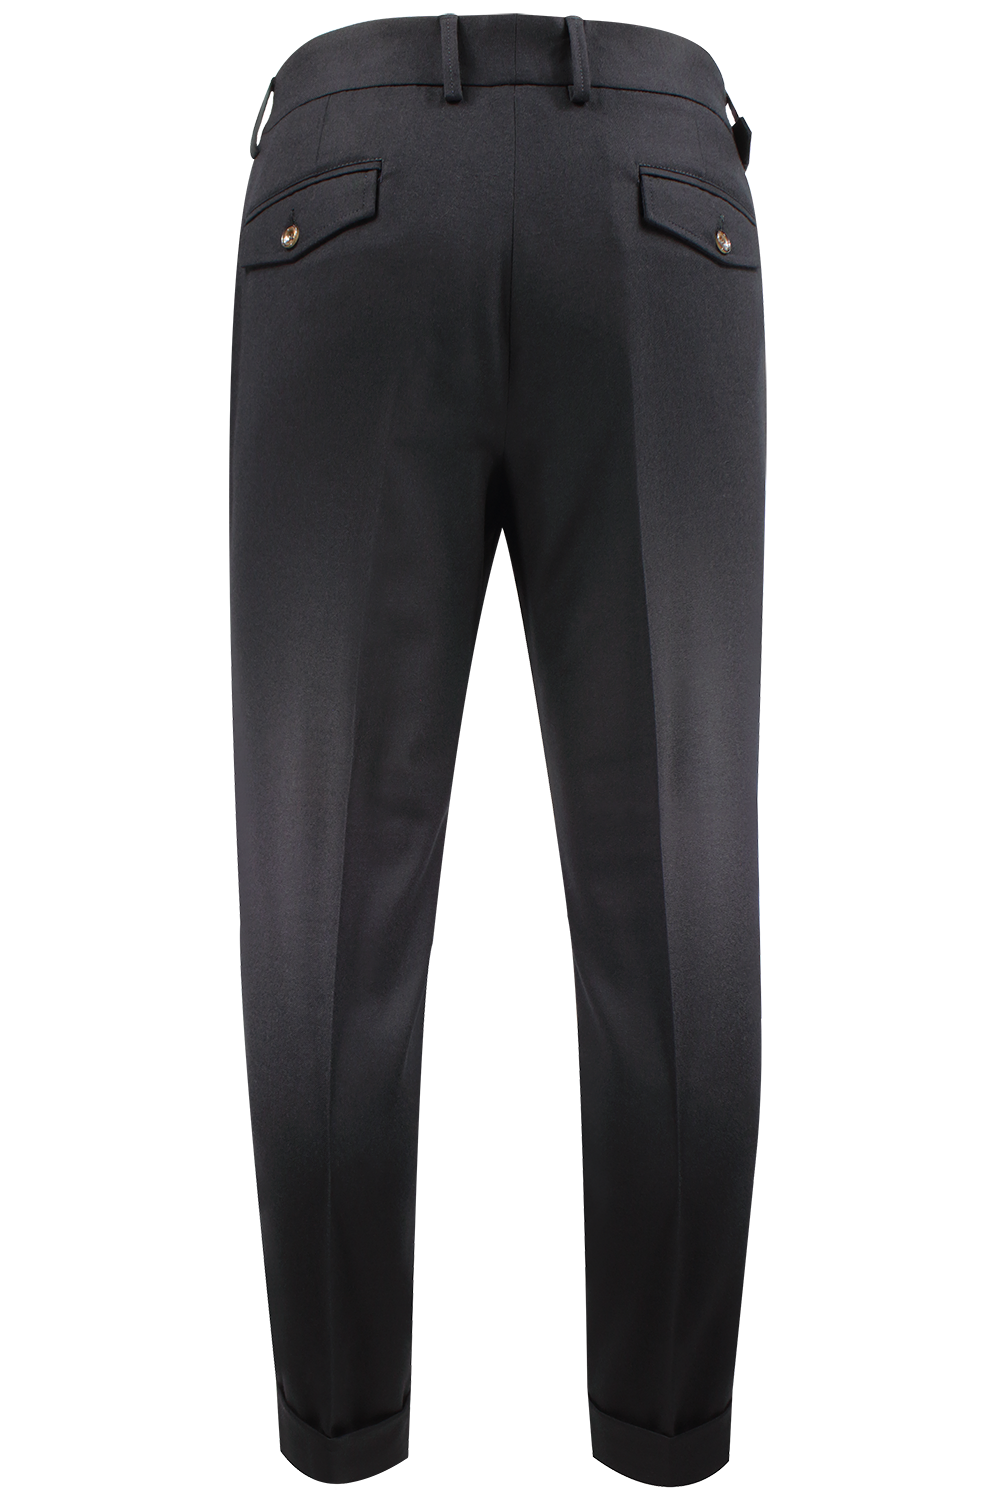 Pantalone con due pinces in lana nera retro